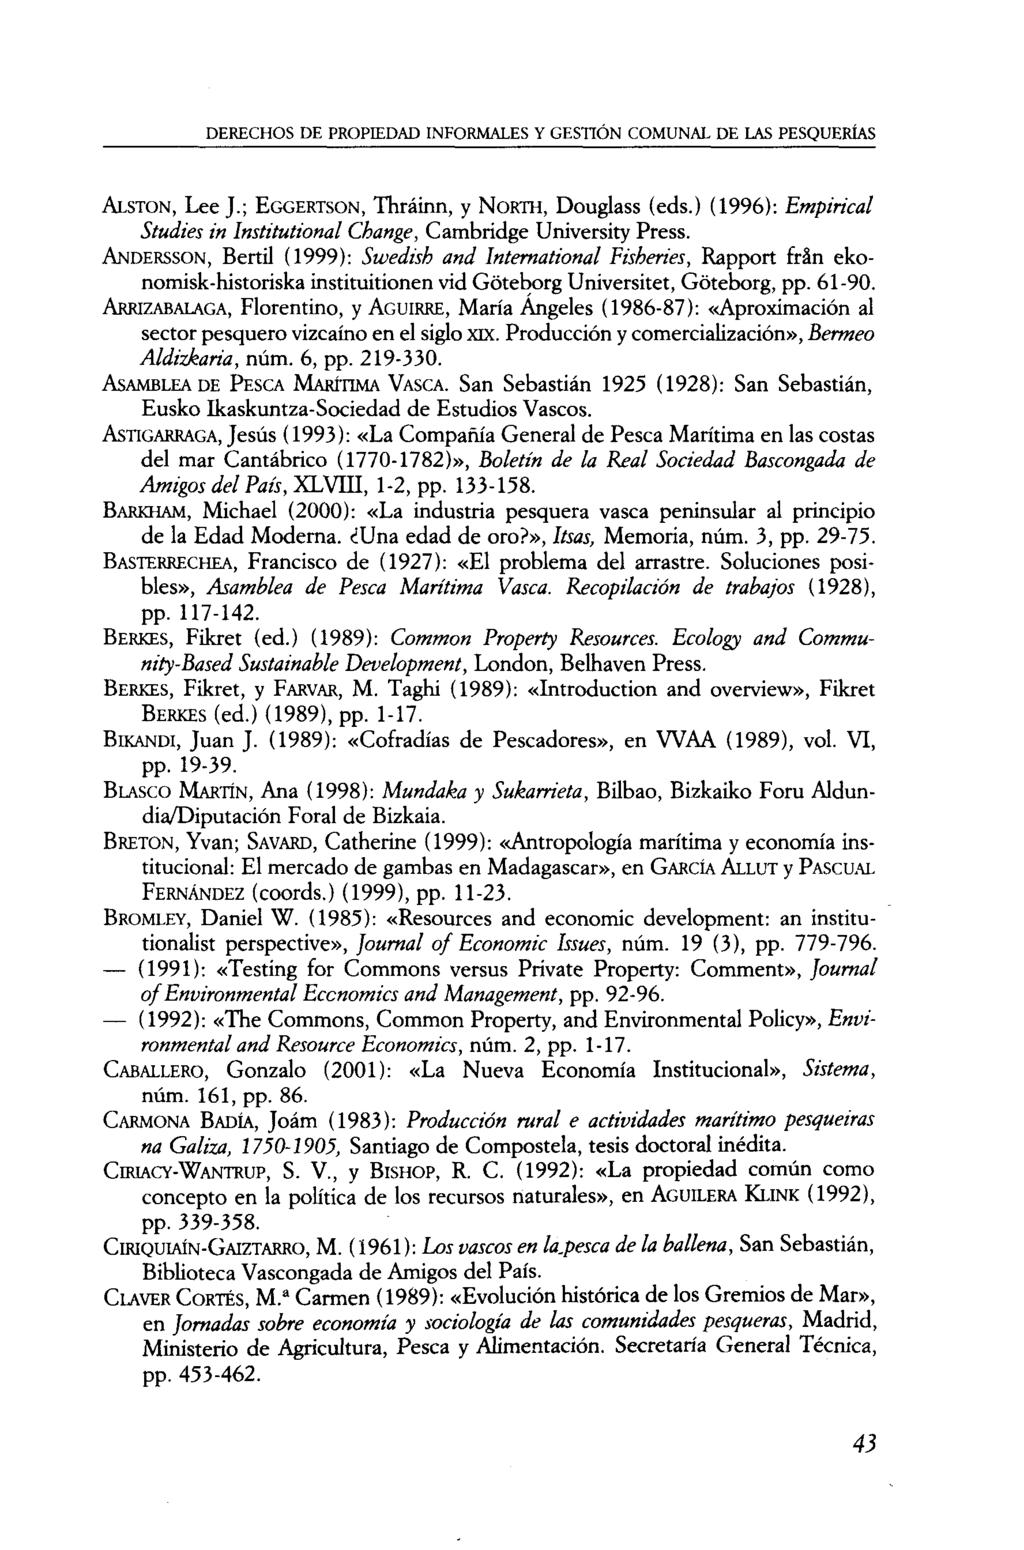 DERECHOS DE PROPIEDAD INFORMALES Y GESTIÓN COMUNAL DE LAS PESQUERÍAS ALSTON, Lee J.; EGGERTSON, Thráinn, y NORTH, Douglass (eds.